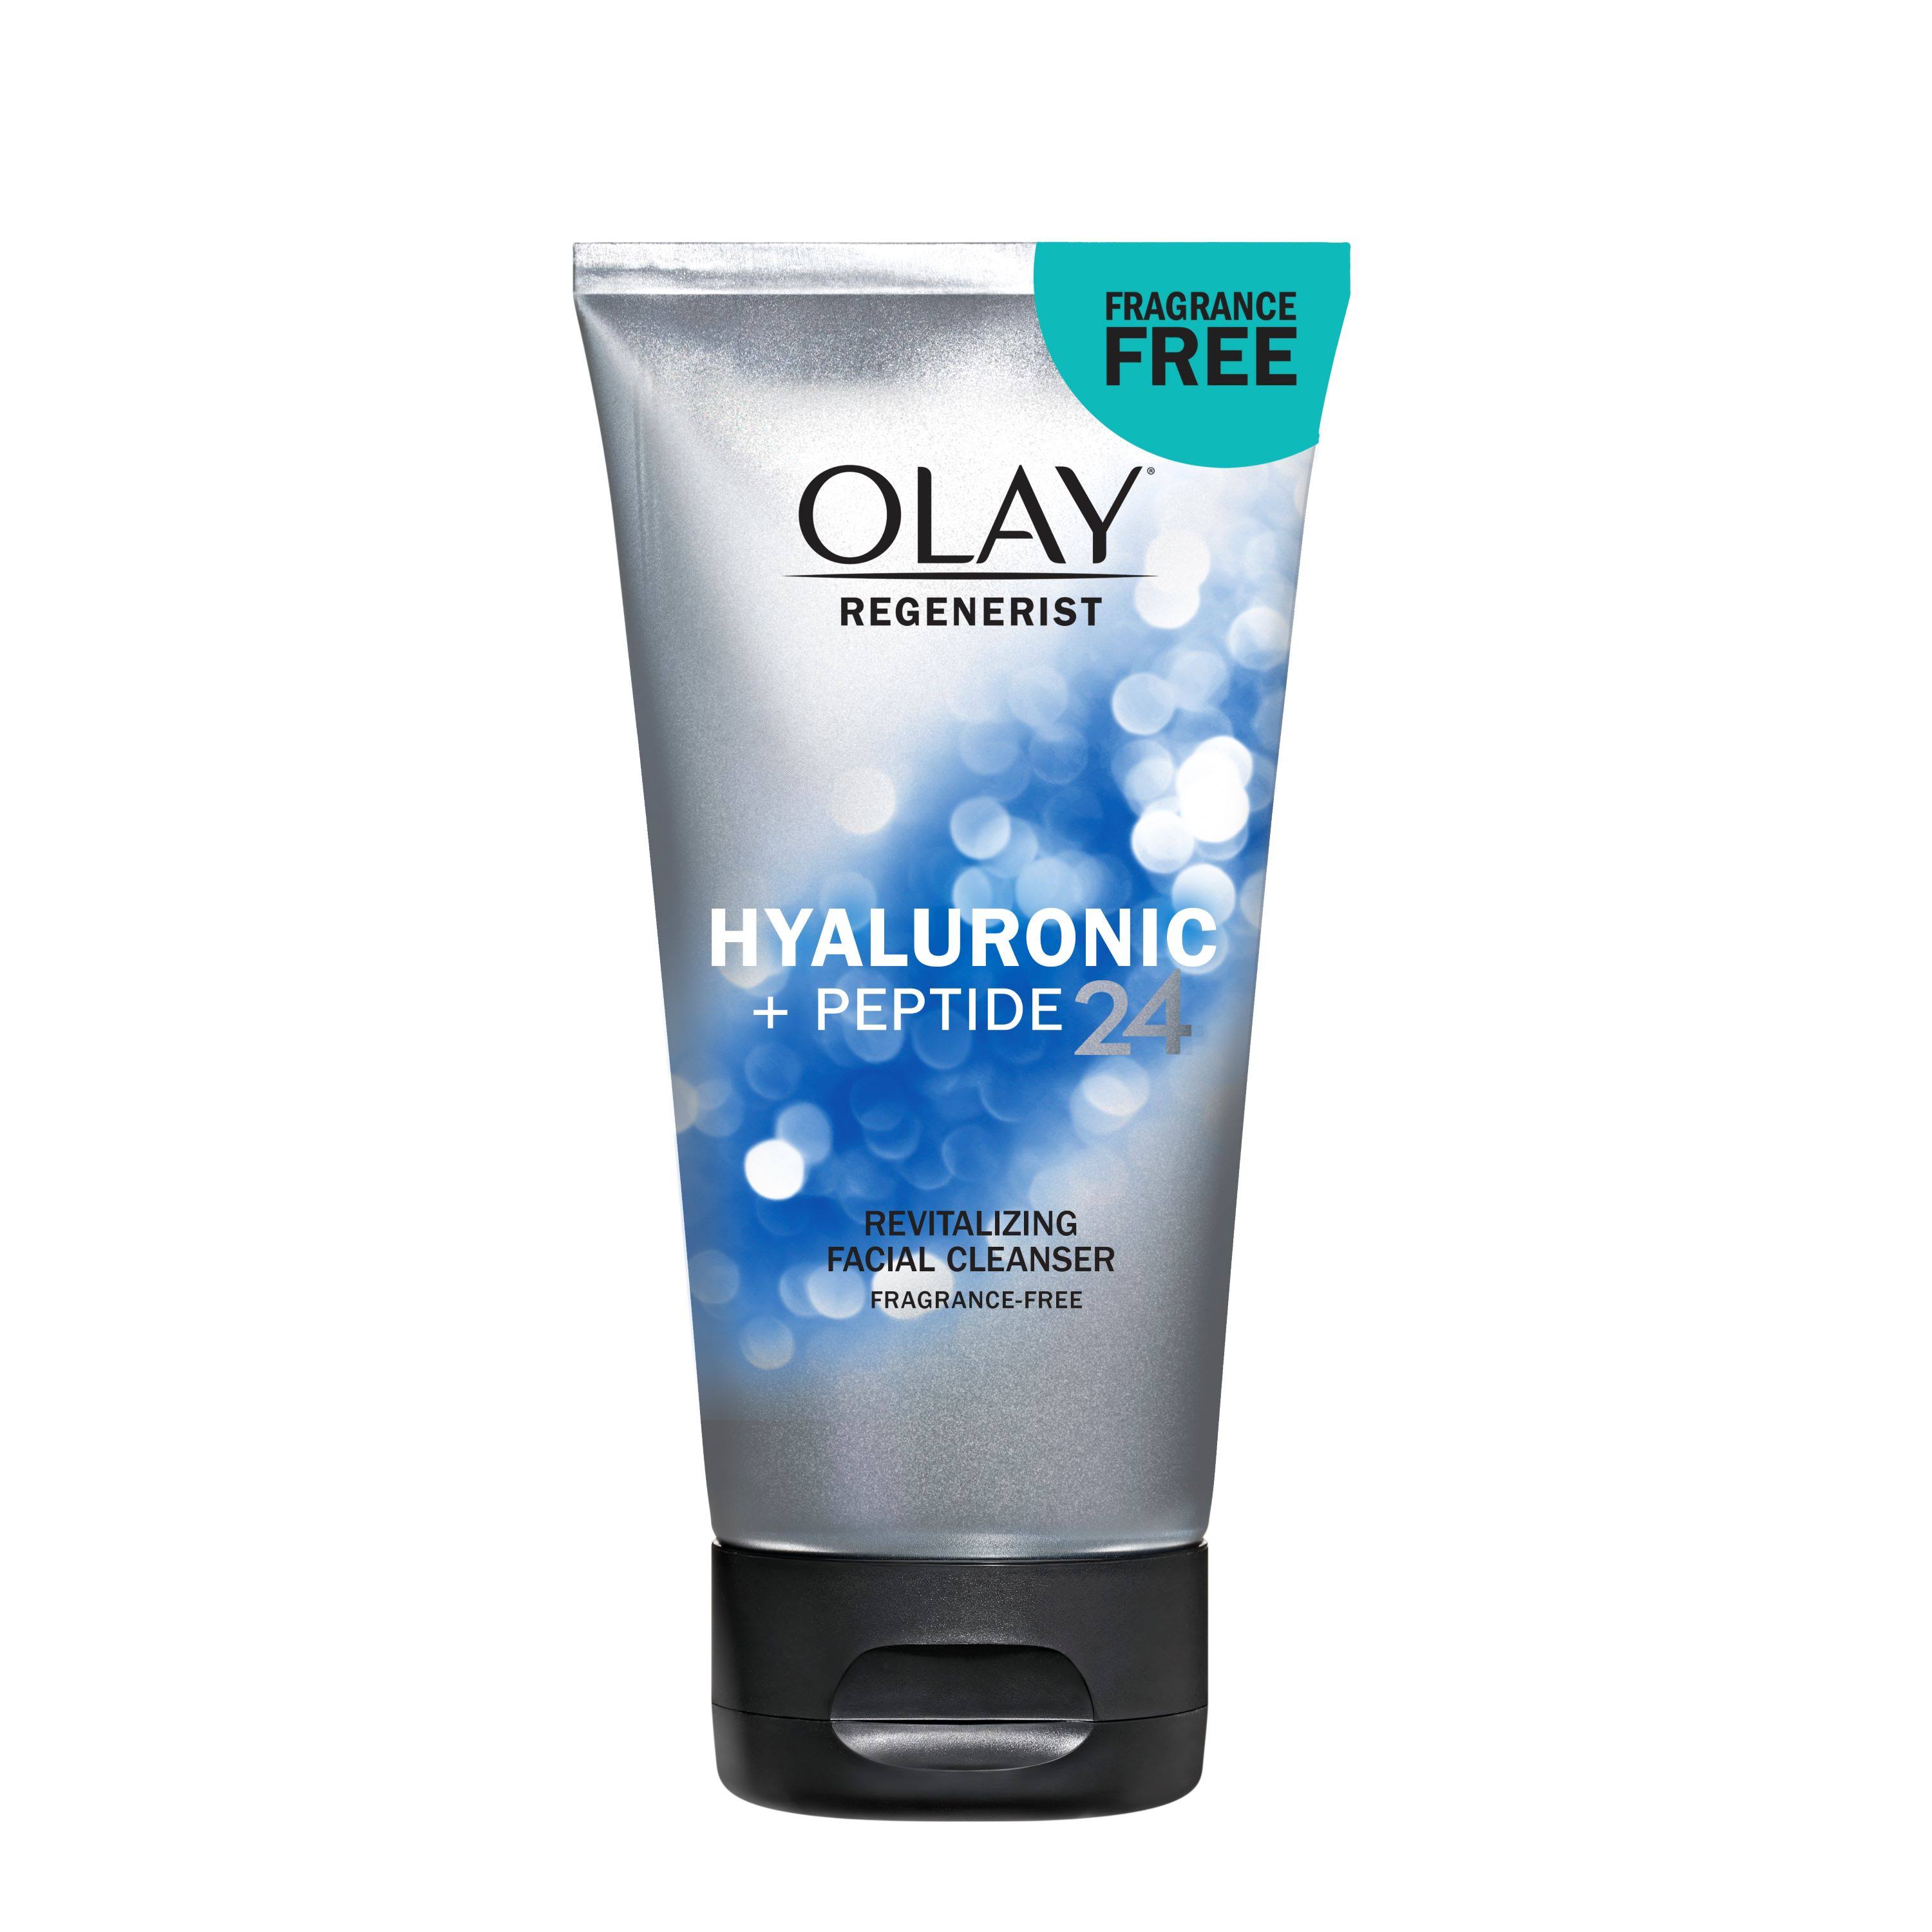 Olay Regenerist Hyaluronic + Peptide 24 Face Wash - 5.0 oz